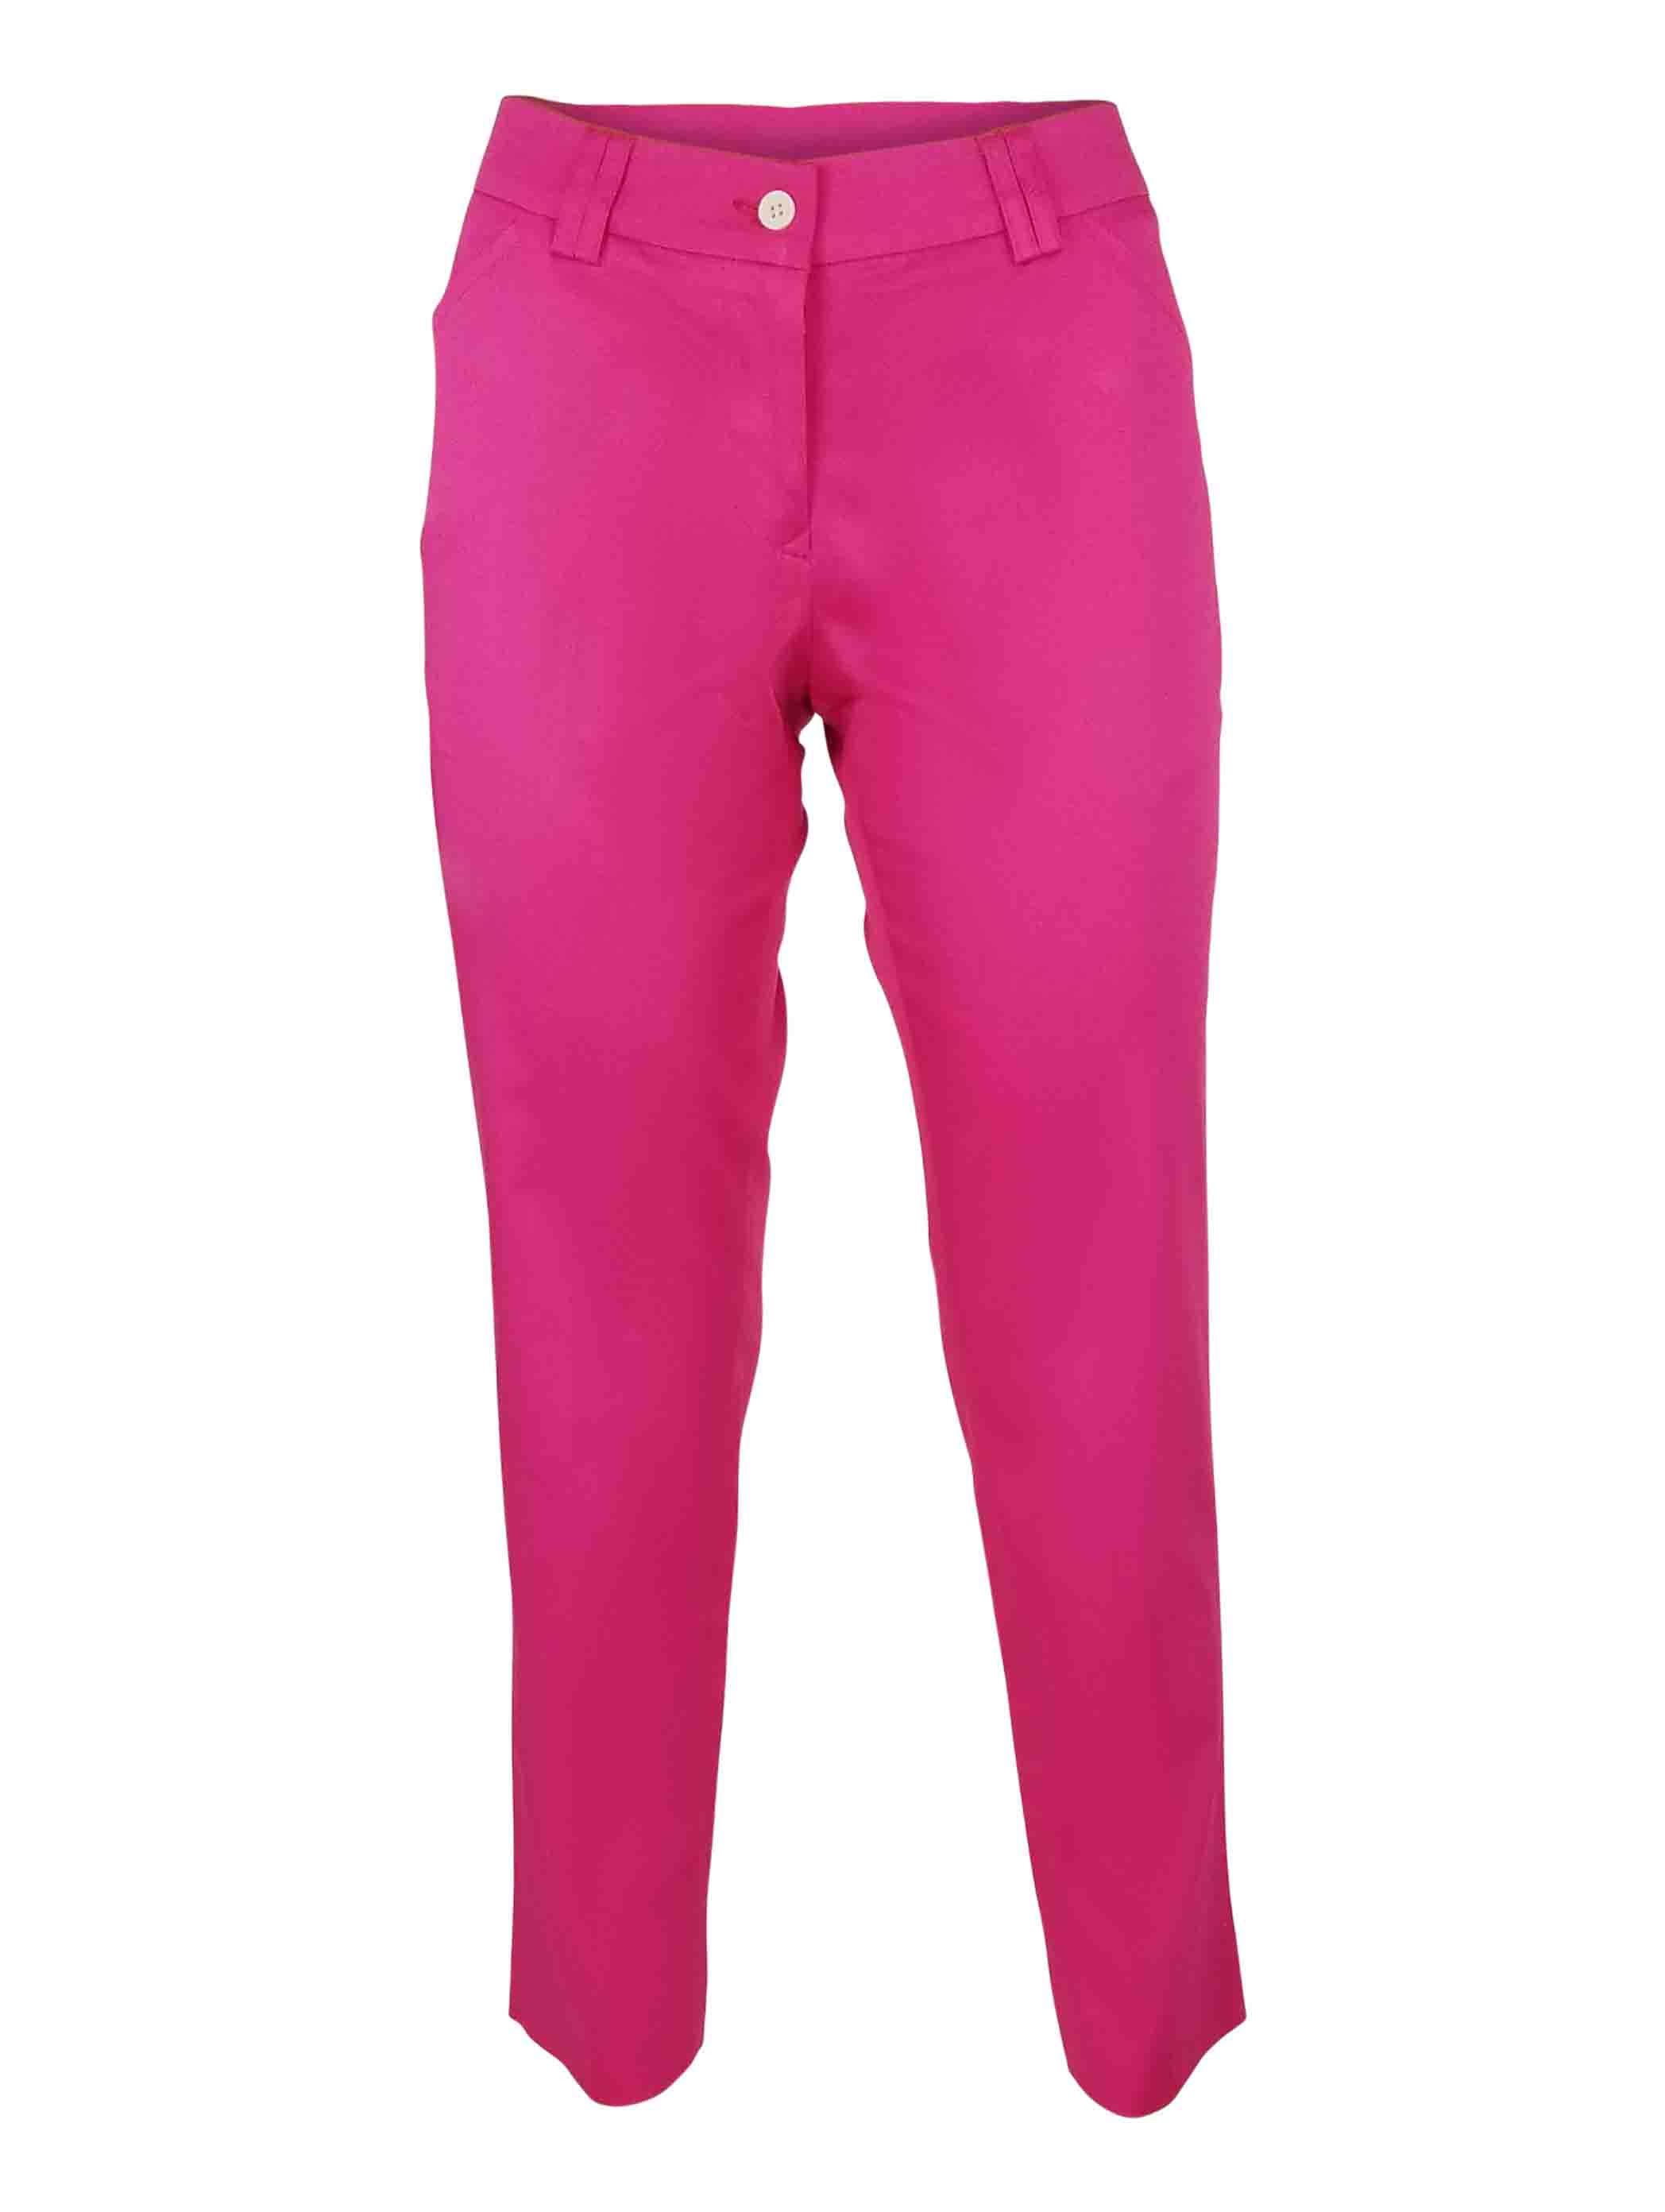 Women's Custom Chino - Pink - Uniform Edit